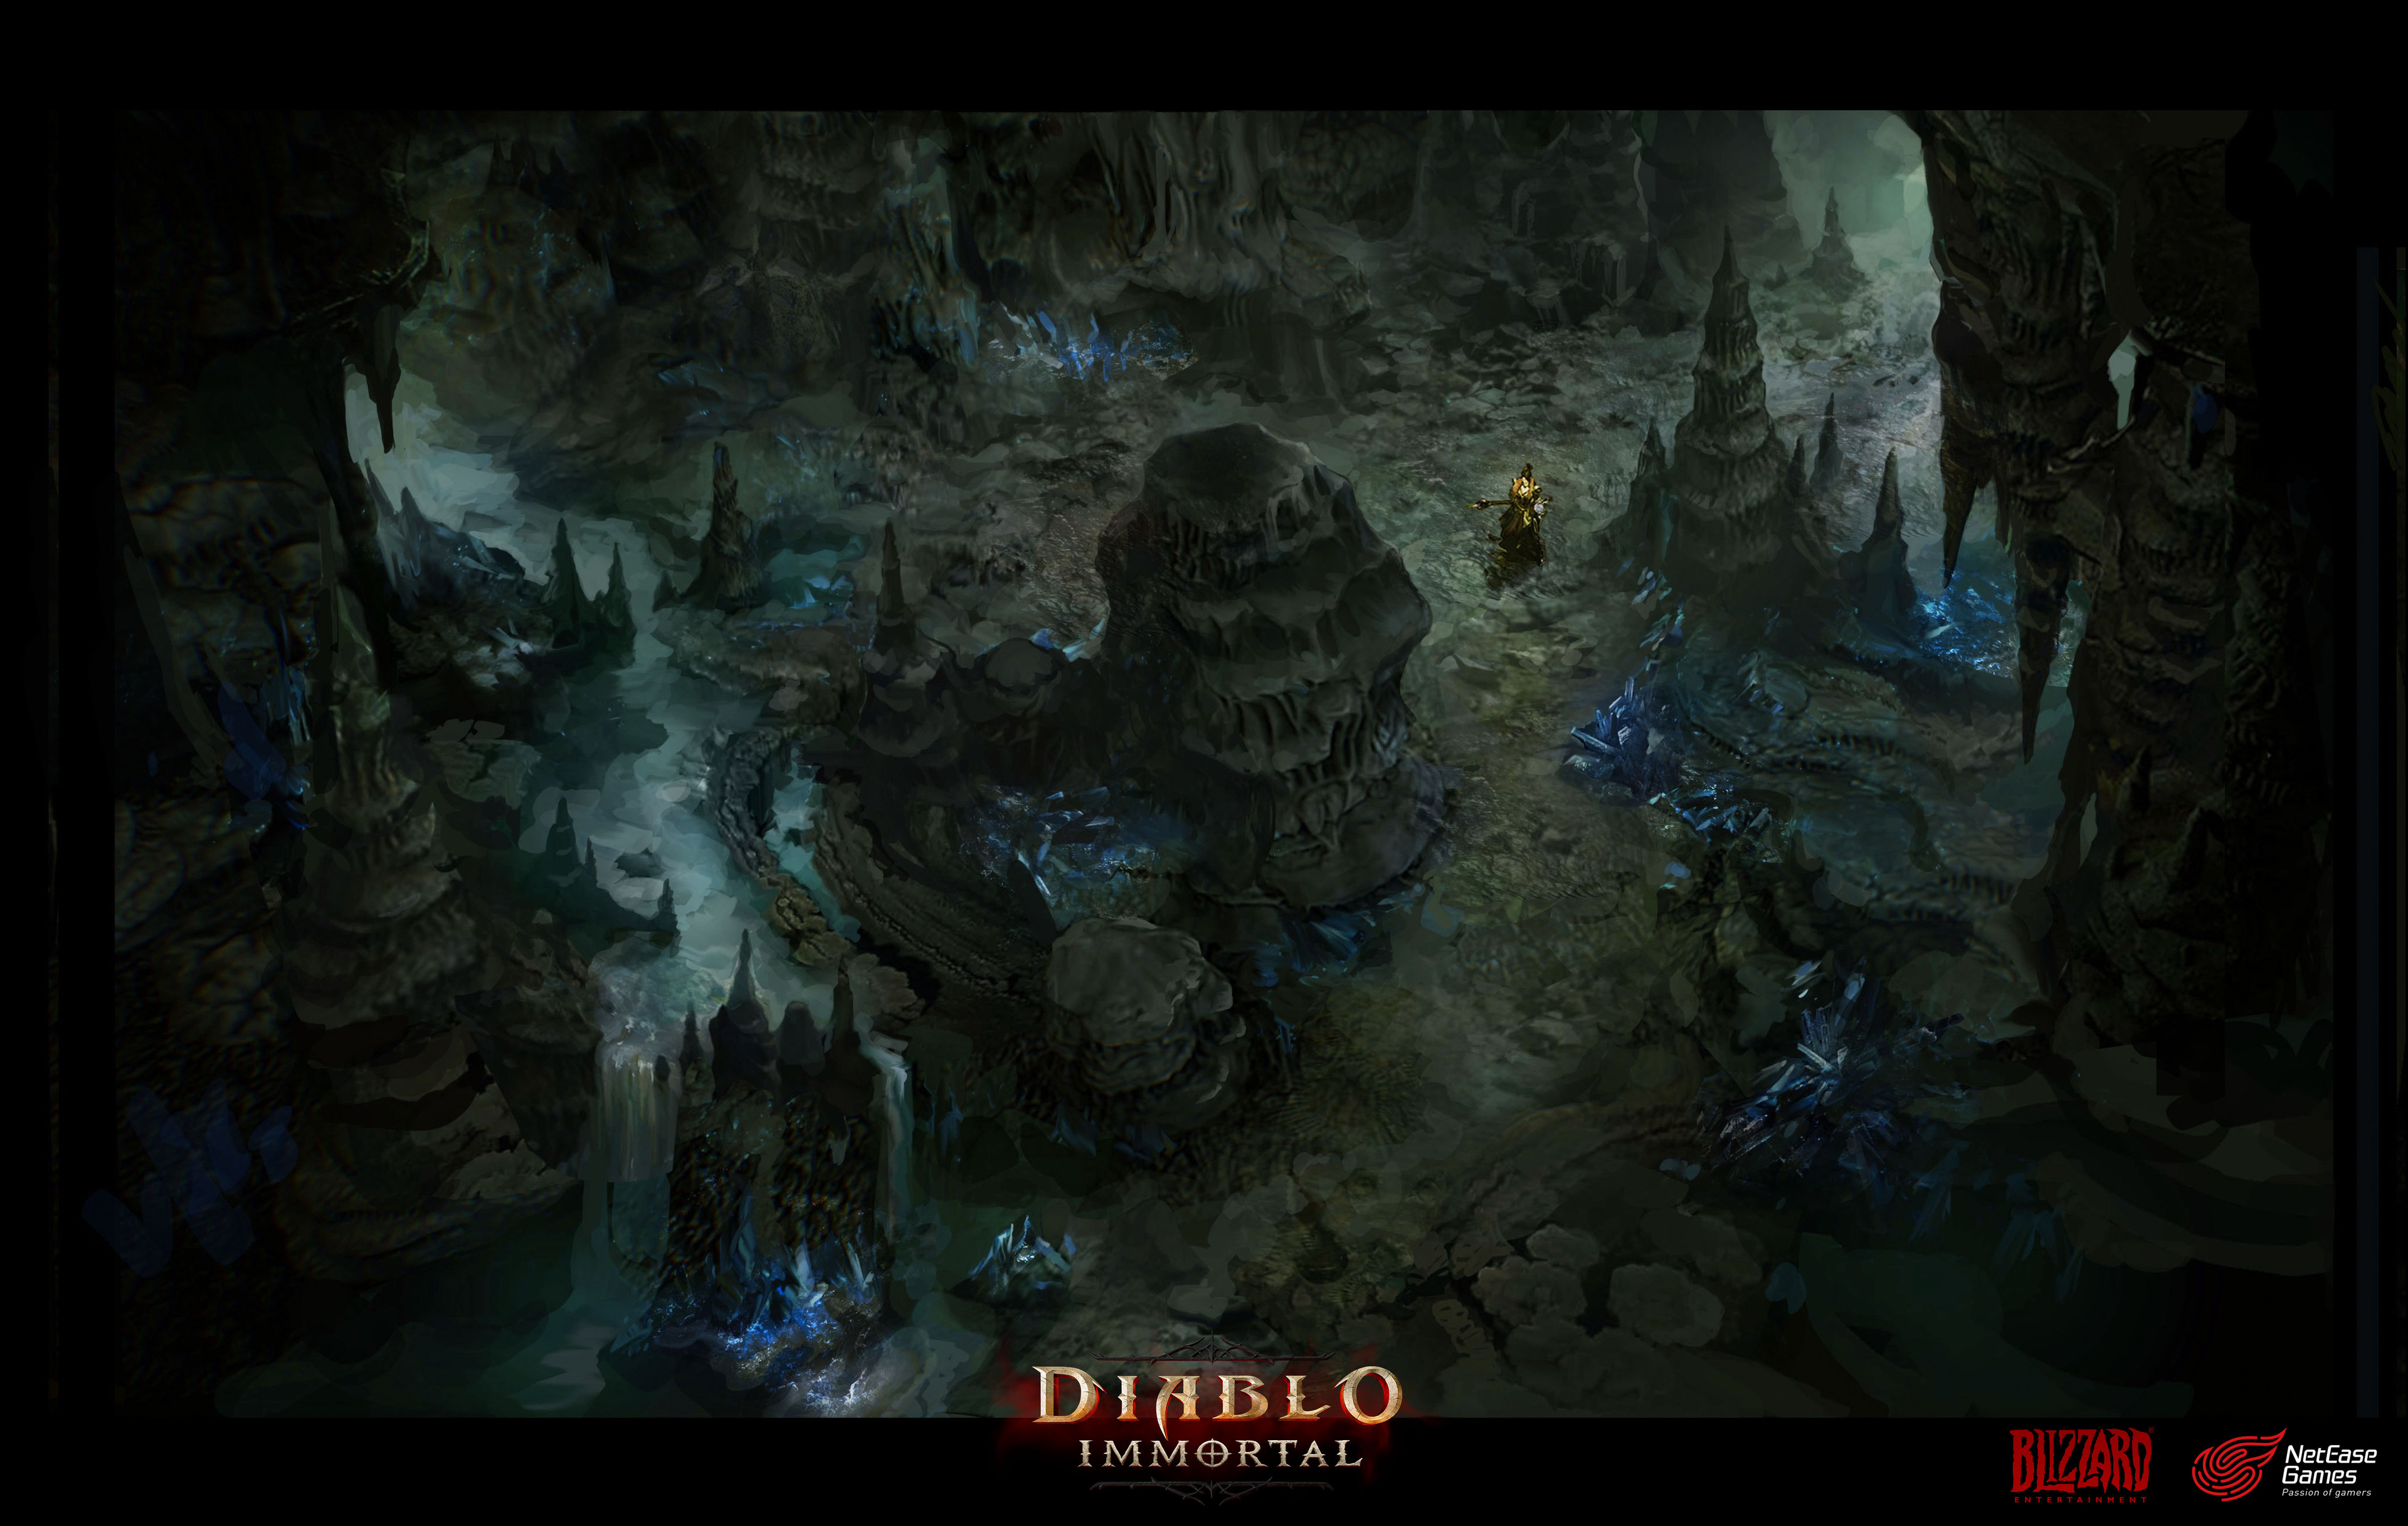 Tudo sobre Diablo Immortal: gameplay e detalhes do lançamento da Blizzard